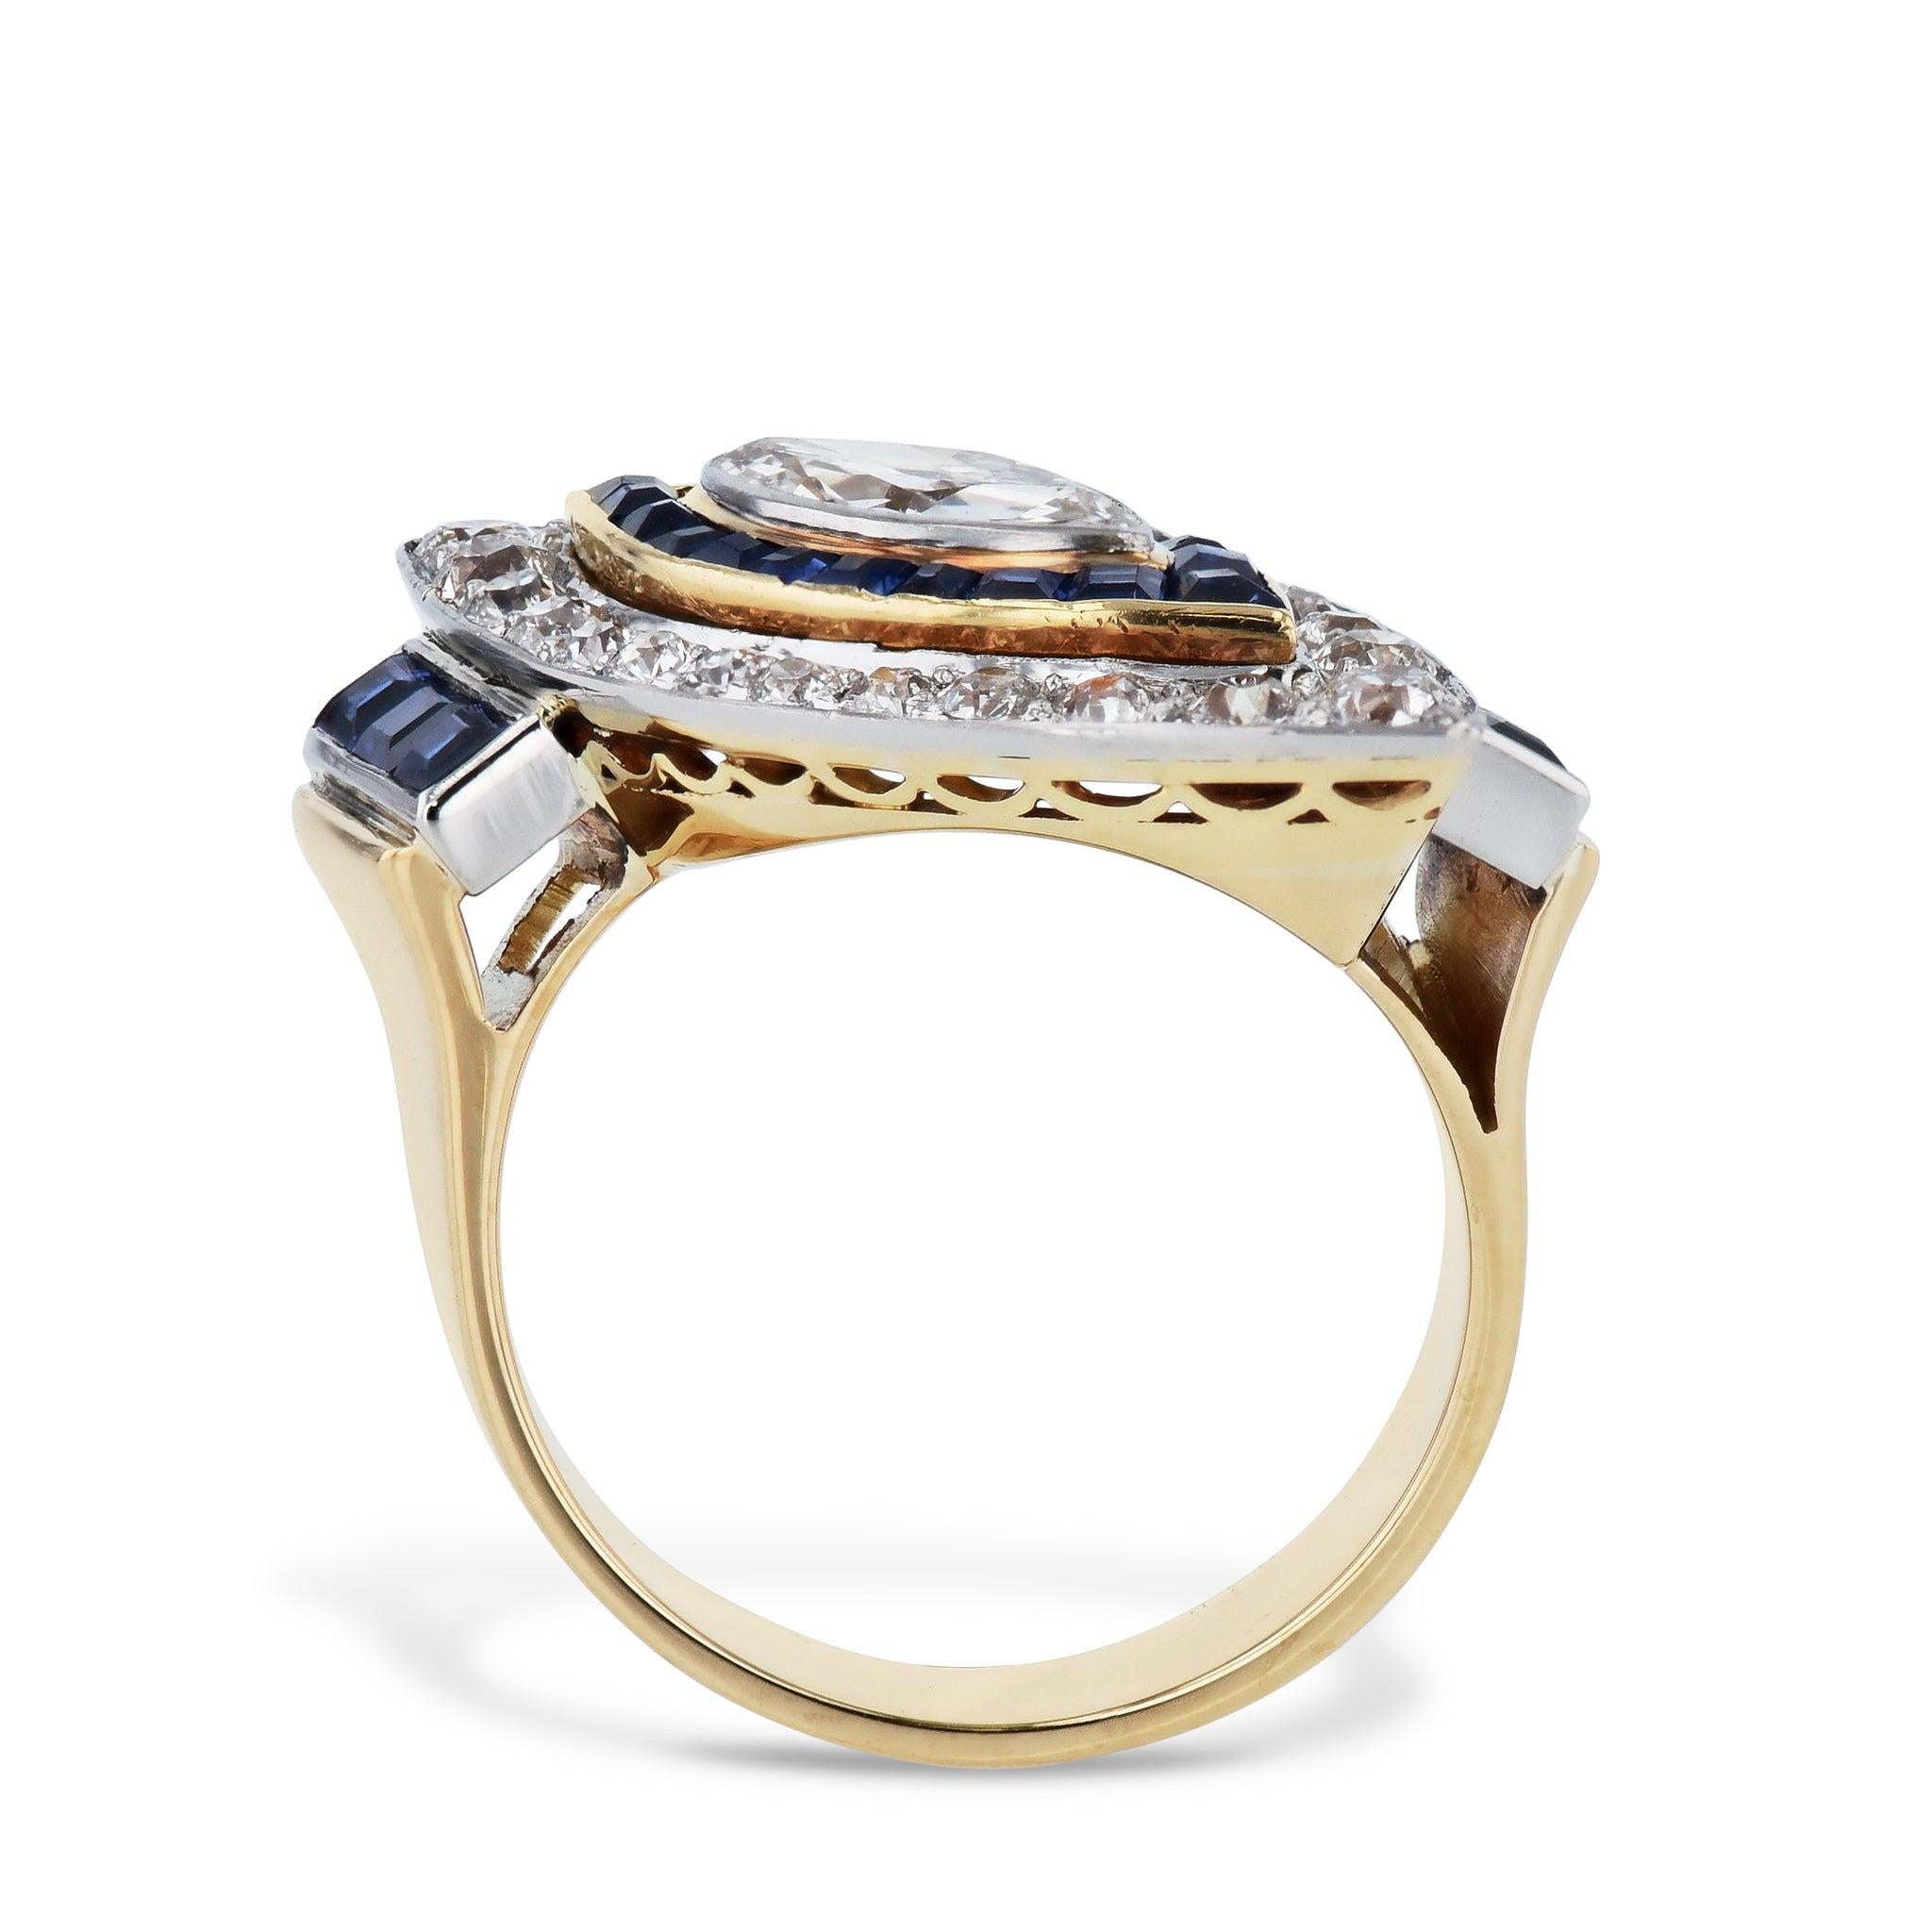 Dieser Art Deco Marquise Diamond Sapphire Estate Ring funkelt mit Grandeur! Gefertigt aus Platin und 18kt Gelbgold, ein Diamant im Marquise-Schliff, umgeben von 24 Diamanten im alten europäischen Schliff (ca. 0,70ct TW), 20 Saphiren im